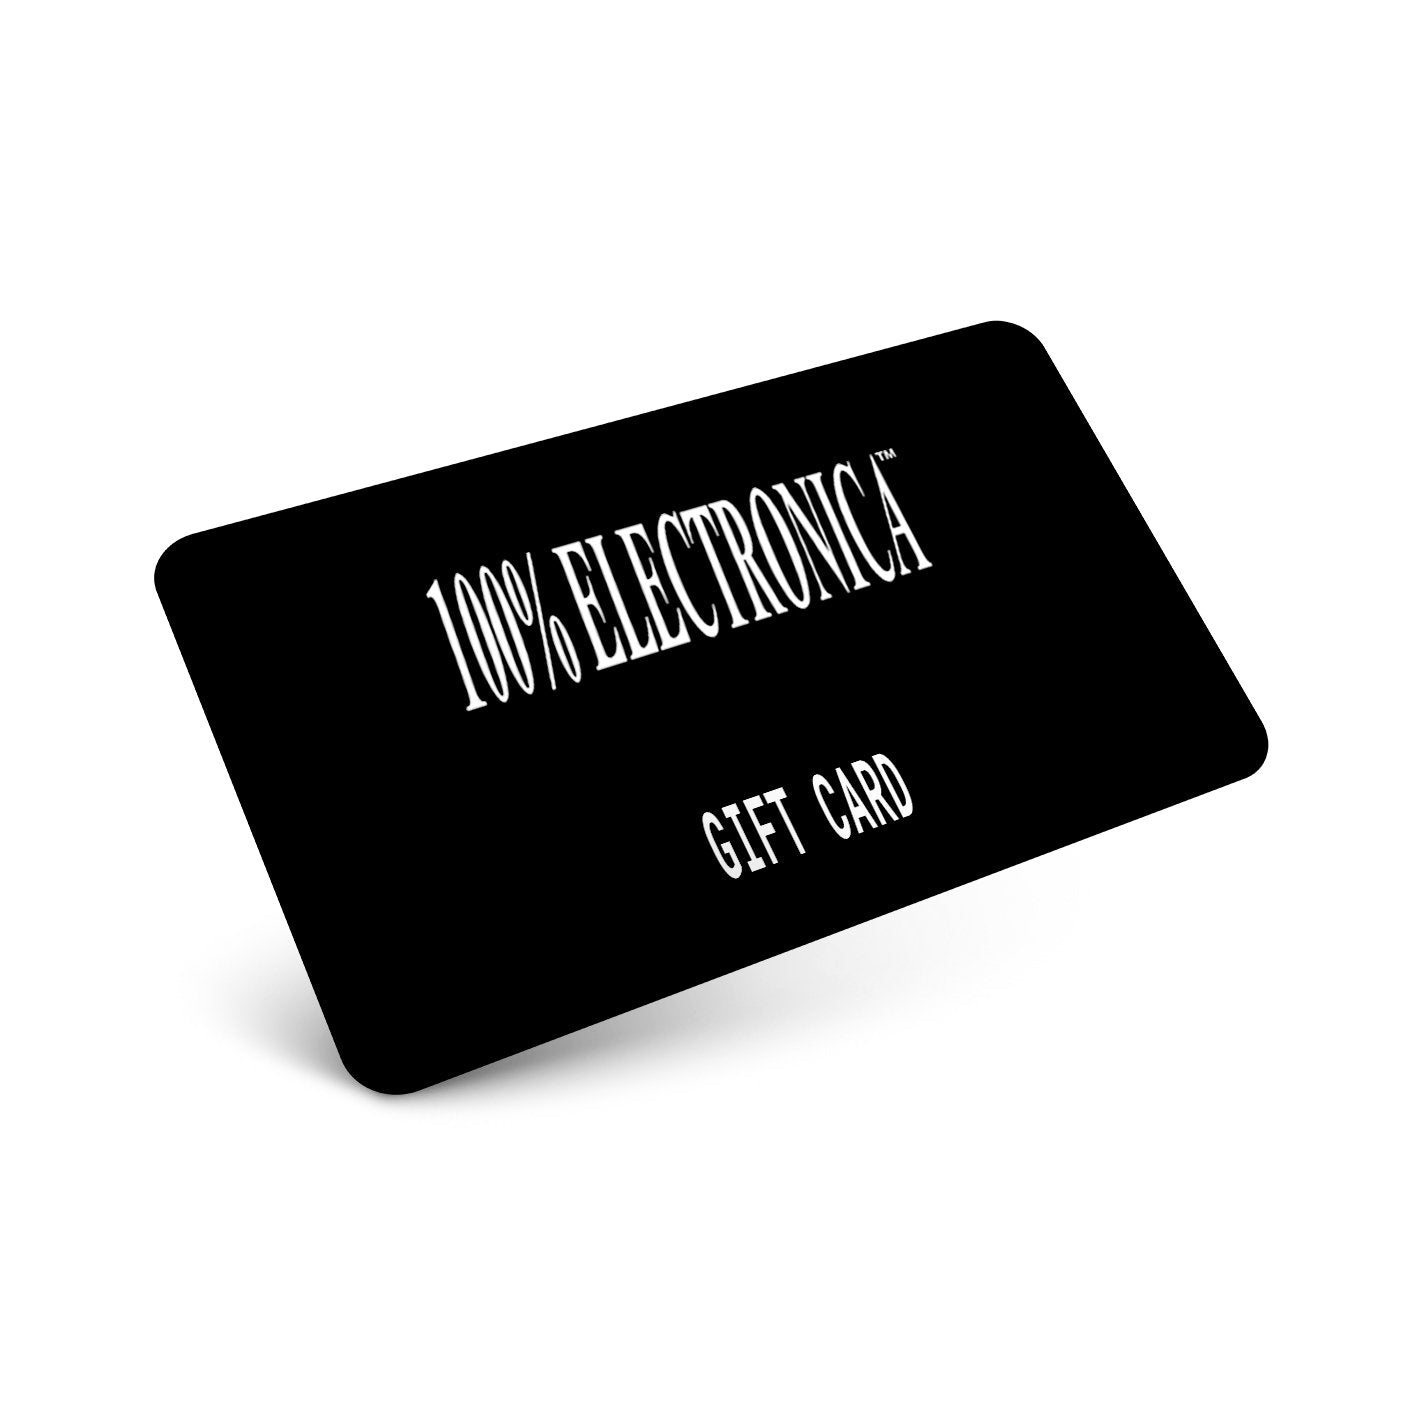 100% Electronica - 100% Electronica Gift Card - 100% Electronica Official Store (Photo 1)